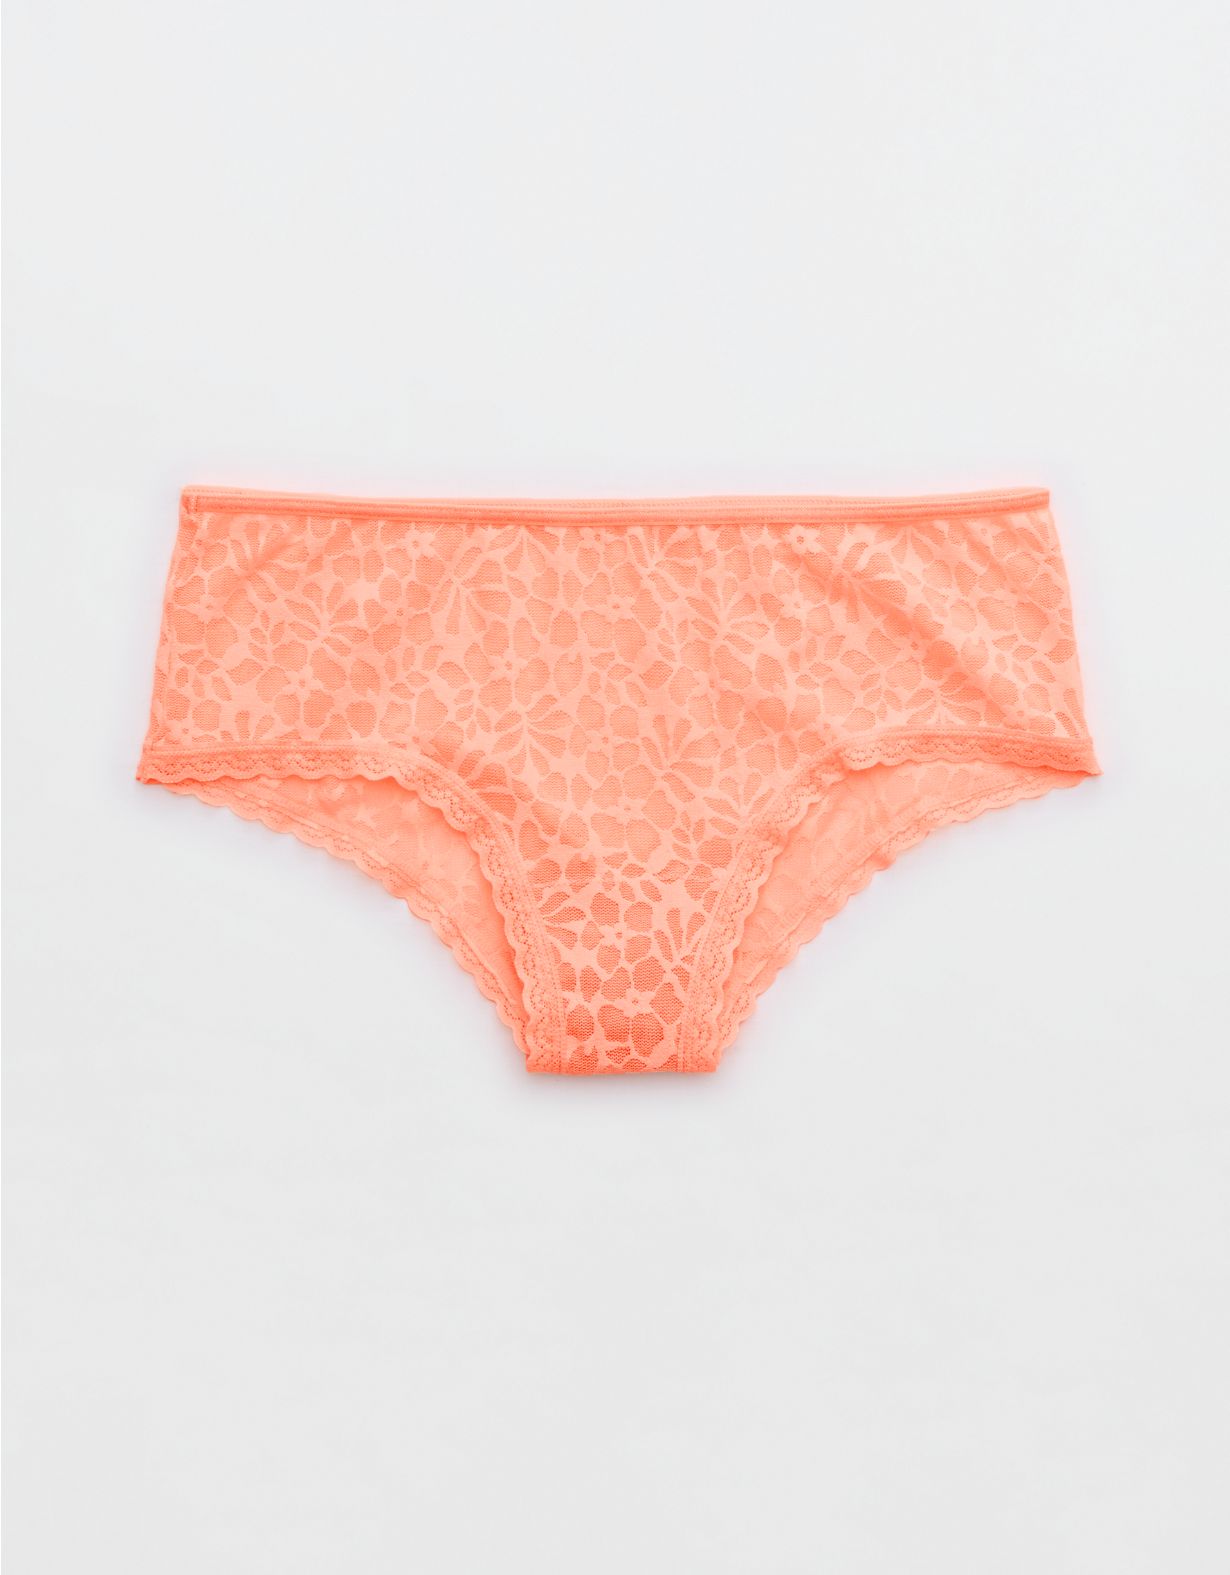 Aerie Island Breeze Lace Lurex Cheeky Underwear